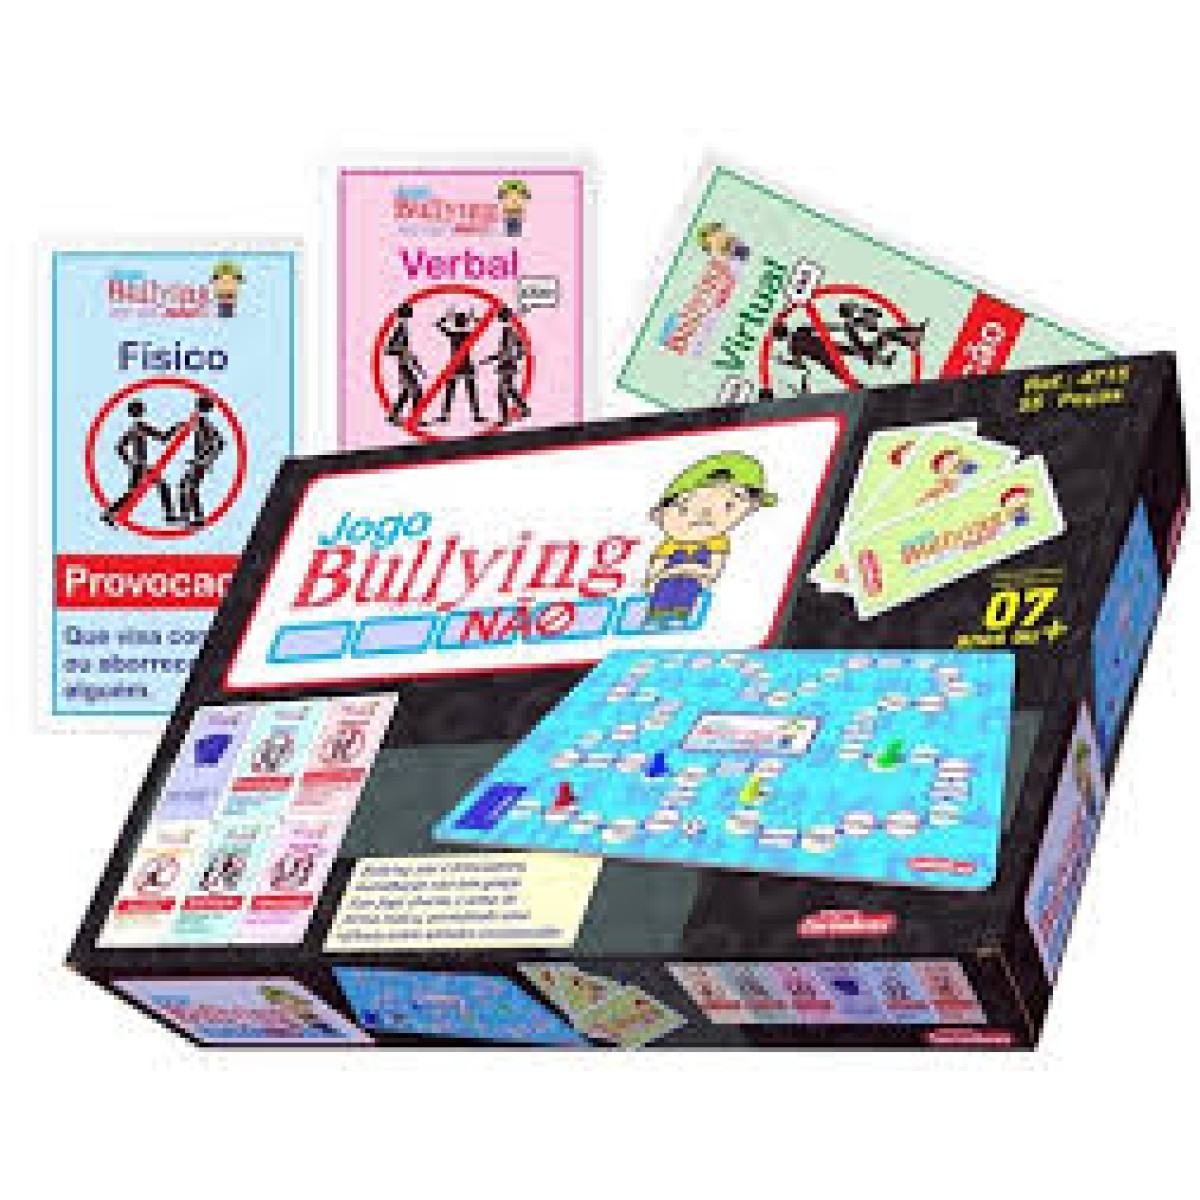 Bullying: Um dia na escola · Jogo de tabuleiro